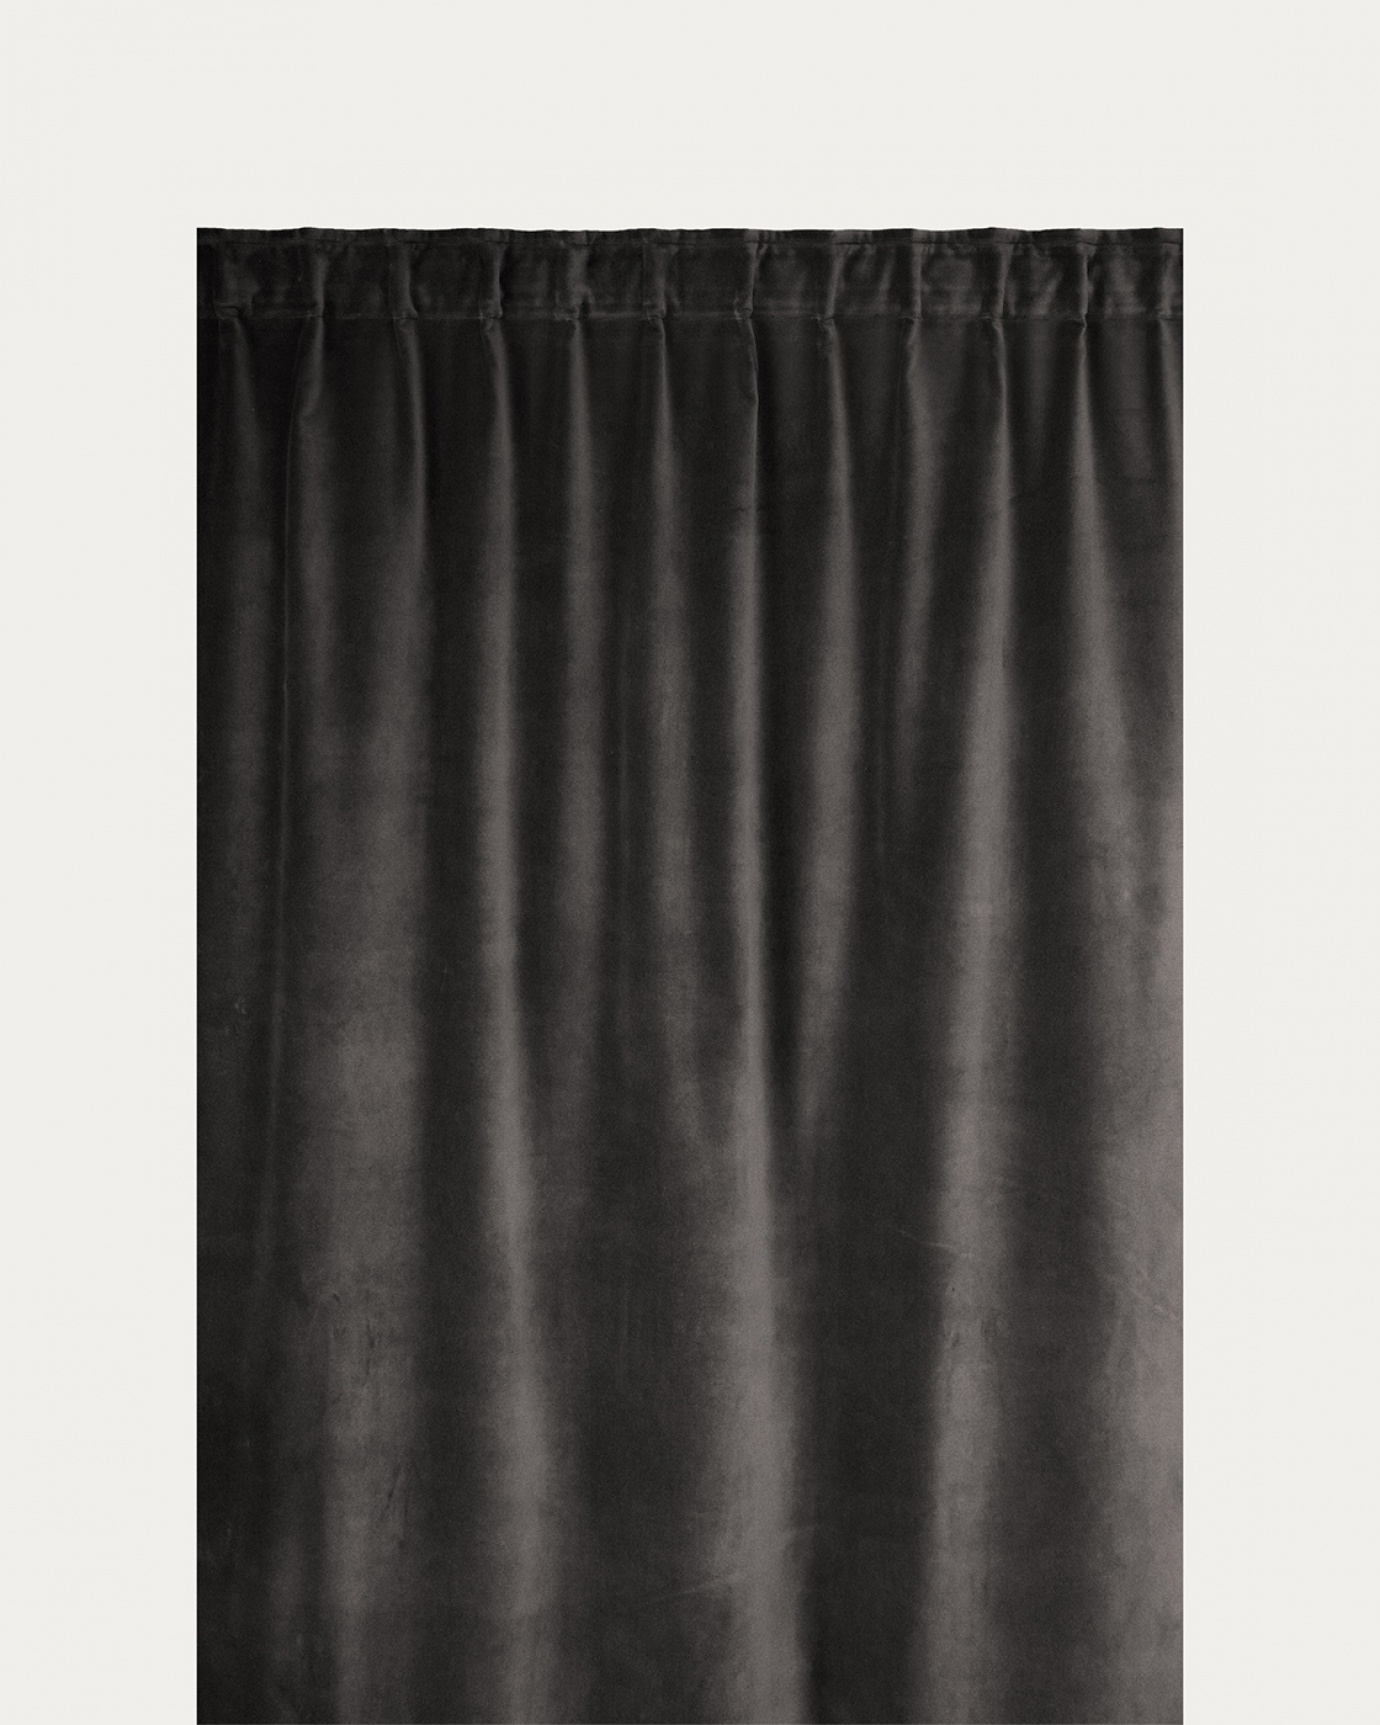 Immagine prodotto grigio antracite scuro PAOLO tenda panna in velluto di cotone con nastro plissettato rifinito di LINUM DESIGN. Dimensioni 135x290 cm e venduto in 2-pezzi.